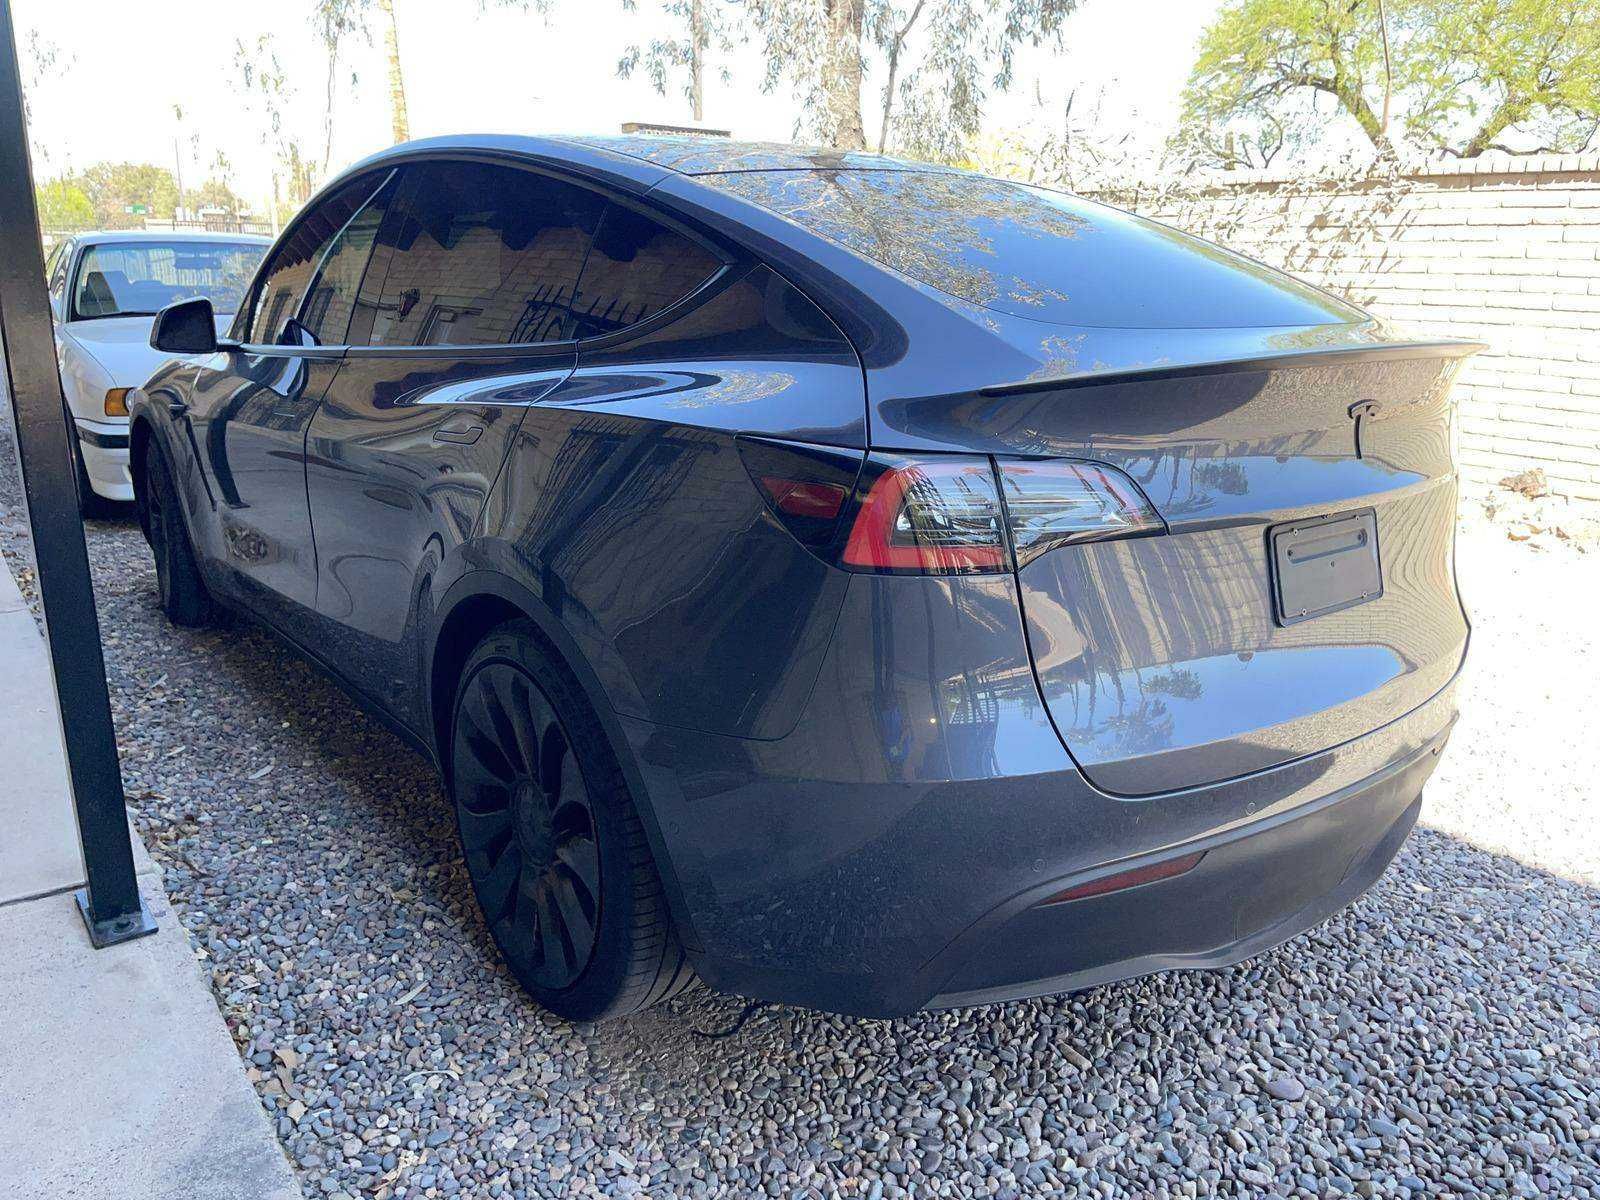 2020 Tesla Model Y